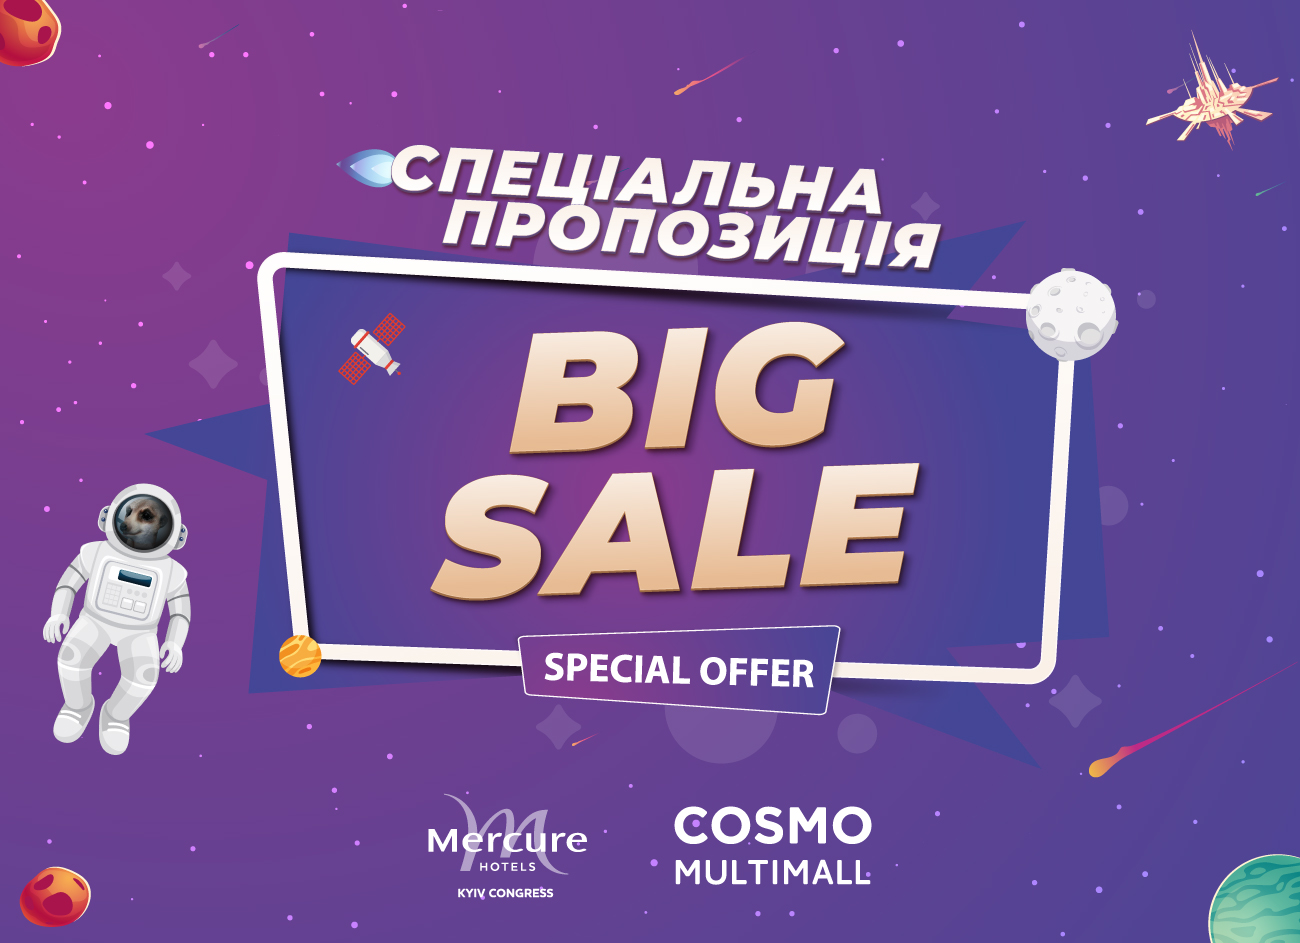 Смарт-шоппинг с Mercure: Big Sale в Cosmo Multimall